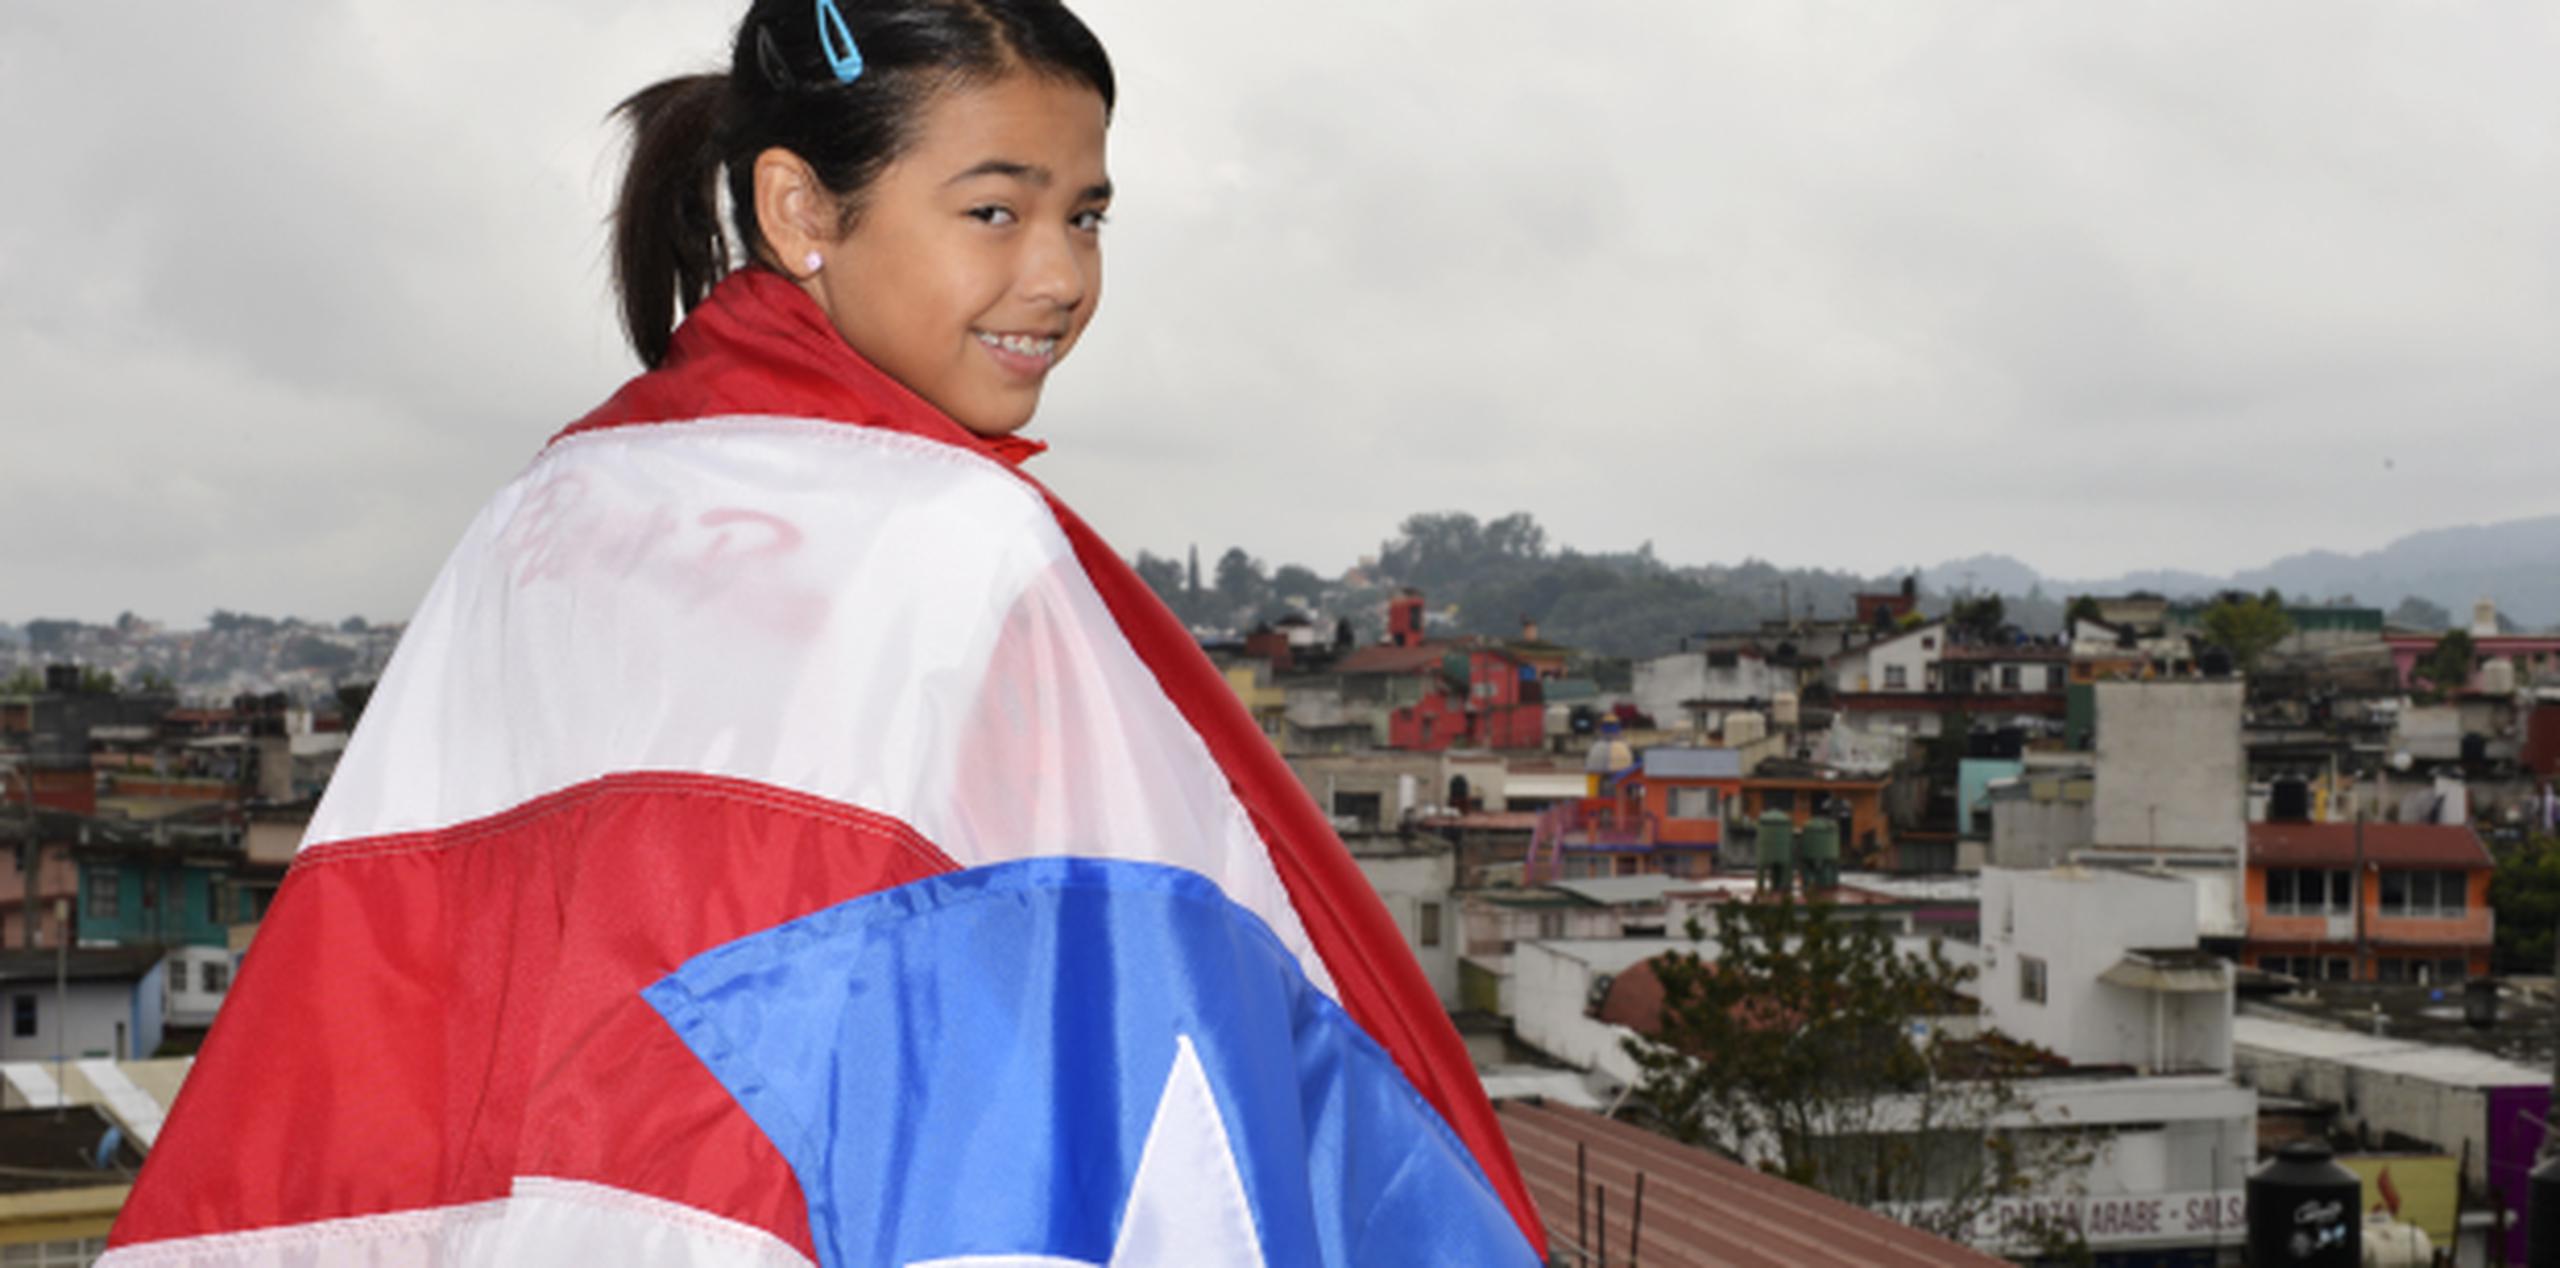 Con 14 años recién cumplidos, Adriana Díaz completó su primera participación en Juegos Centroamericanos y del Caribe con dos medallas de oro, una de plata y una de bronce. (gerald.lopez@gfrmedia)